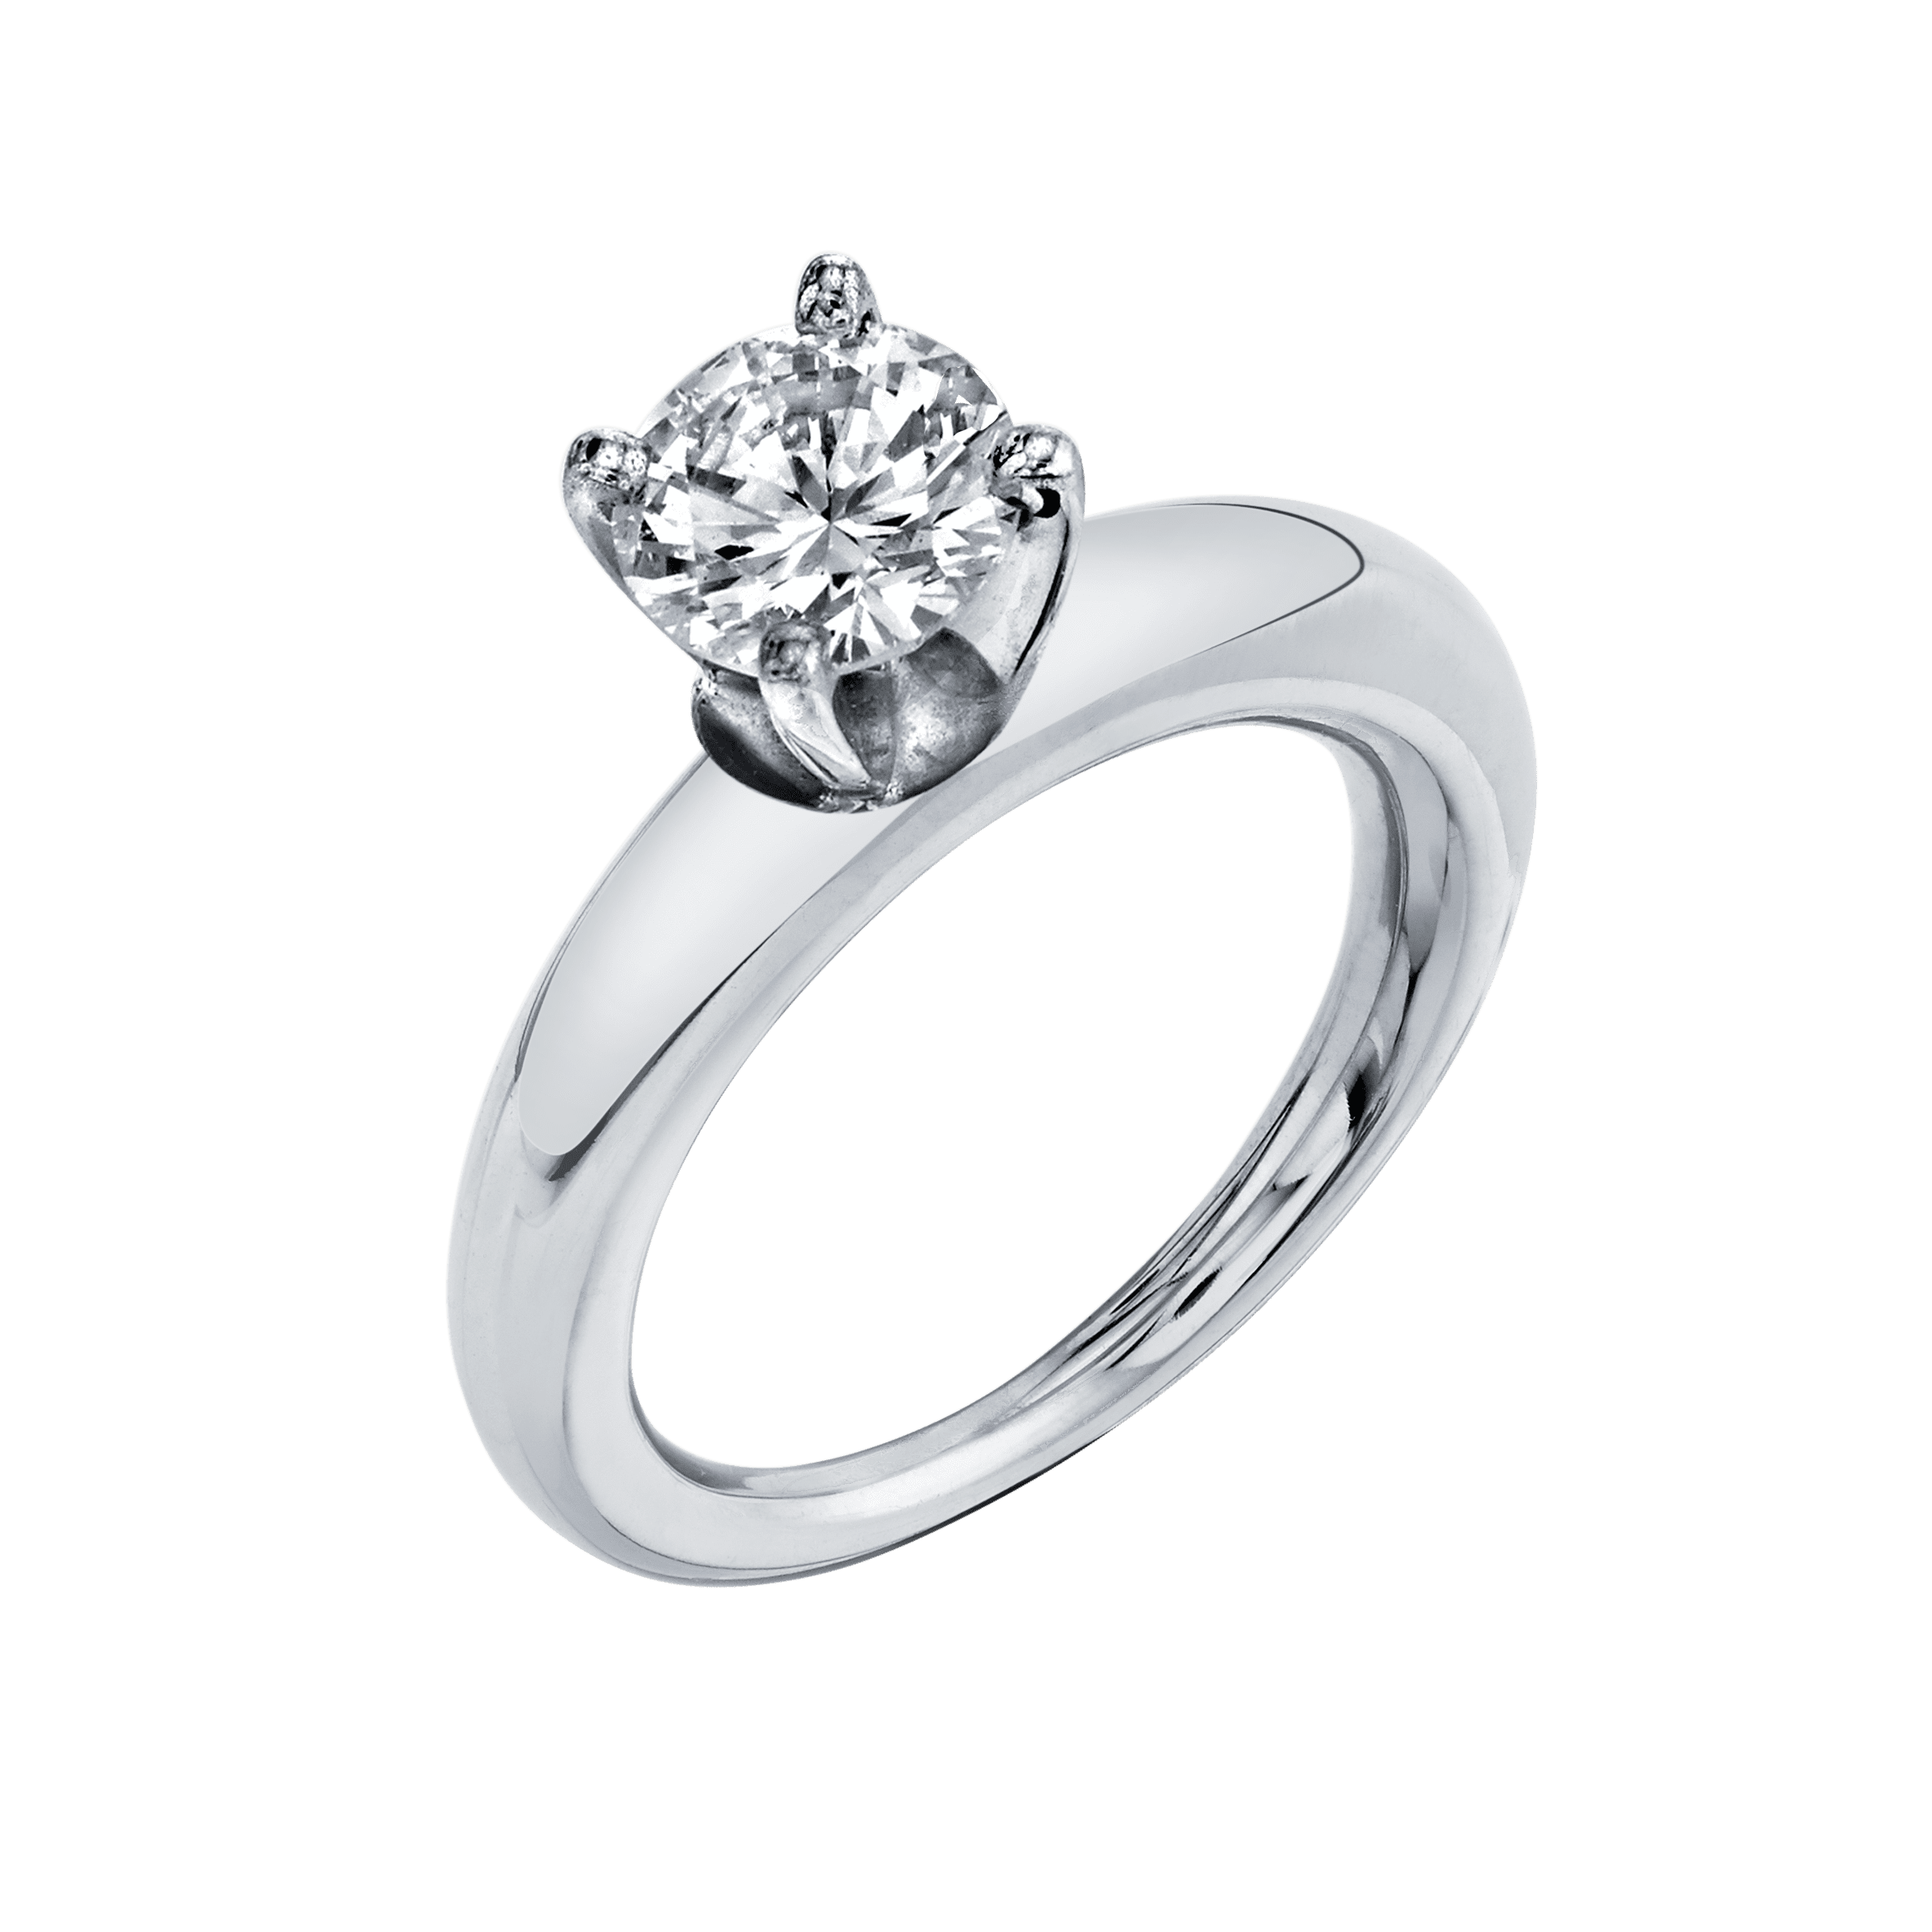 Rising Tusk Ring with Round Diamond 1.50 Carat / 14K White Gold / 6